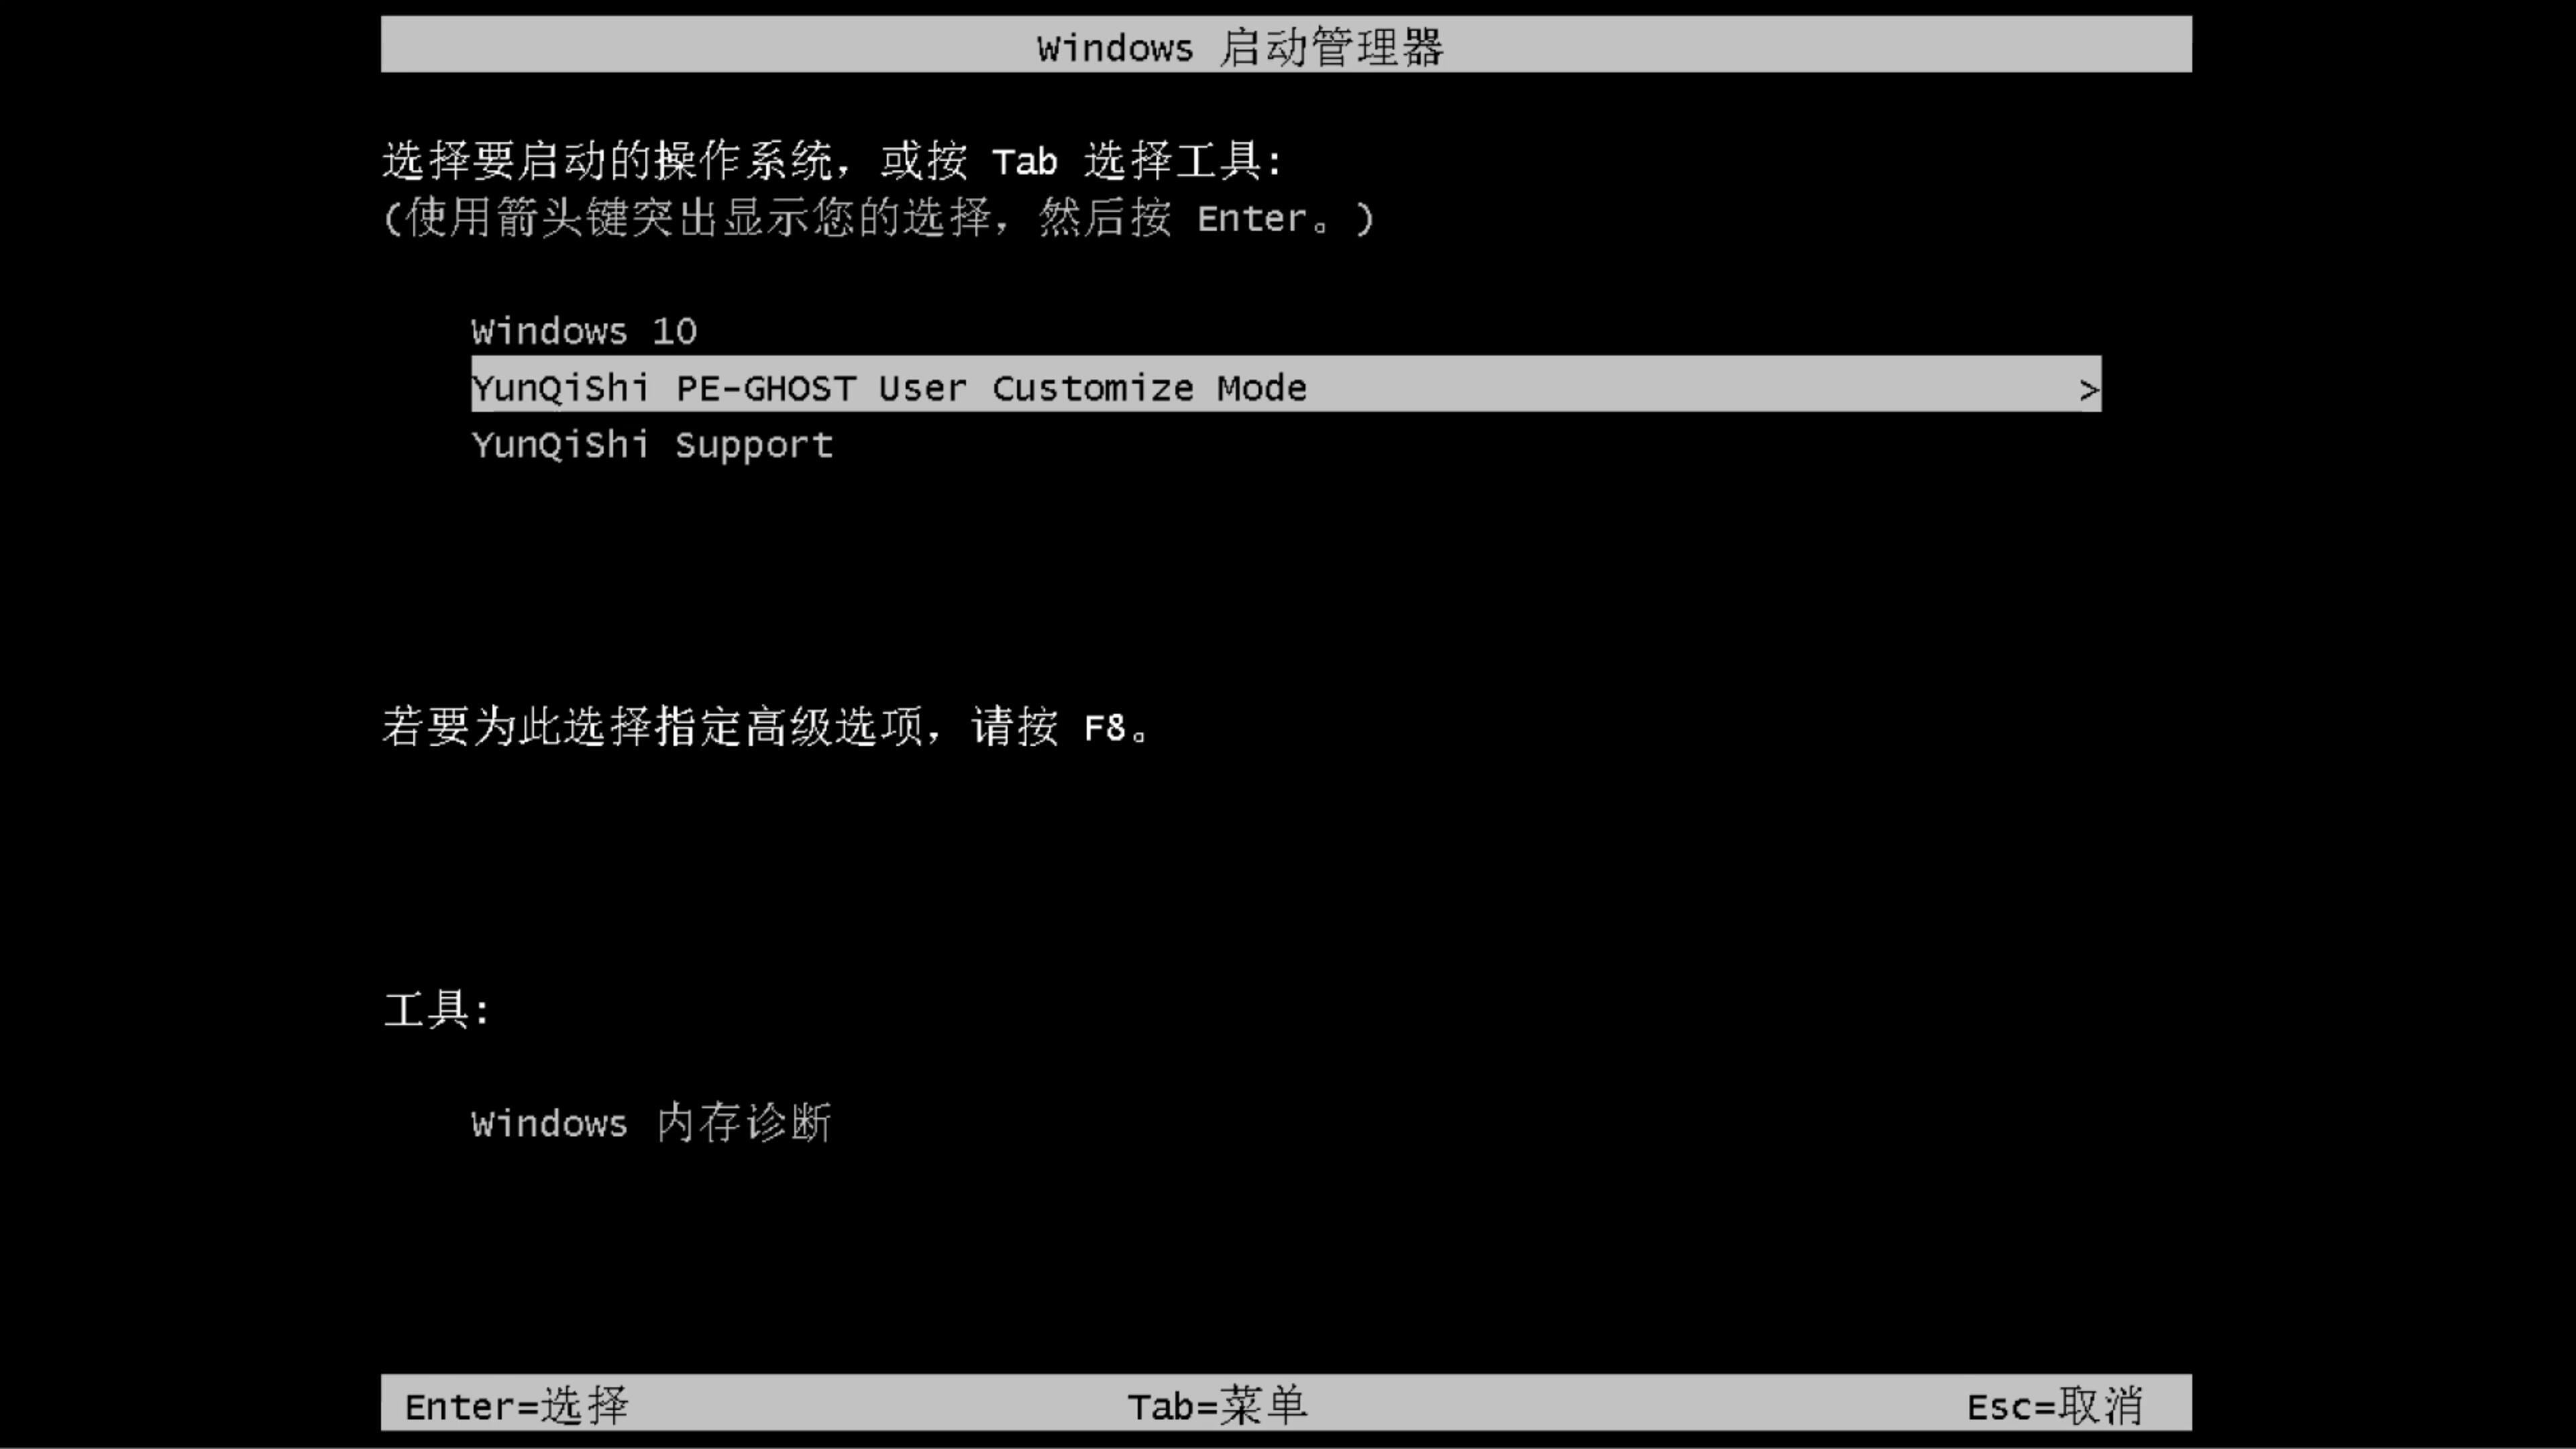 最新台式机专用系统  windows7 x64  纯净中文旗舰版系统下载 V2021.04(9)